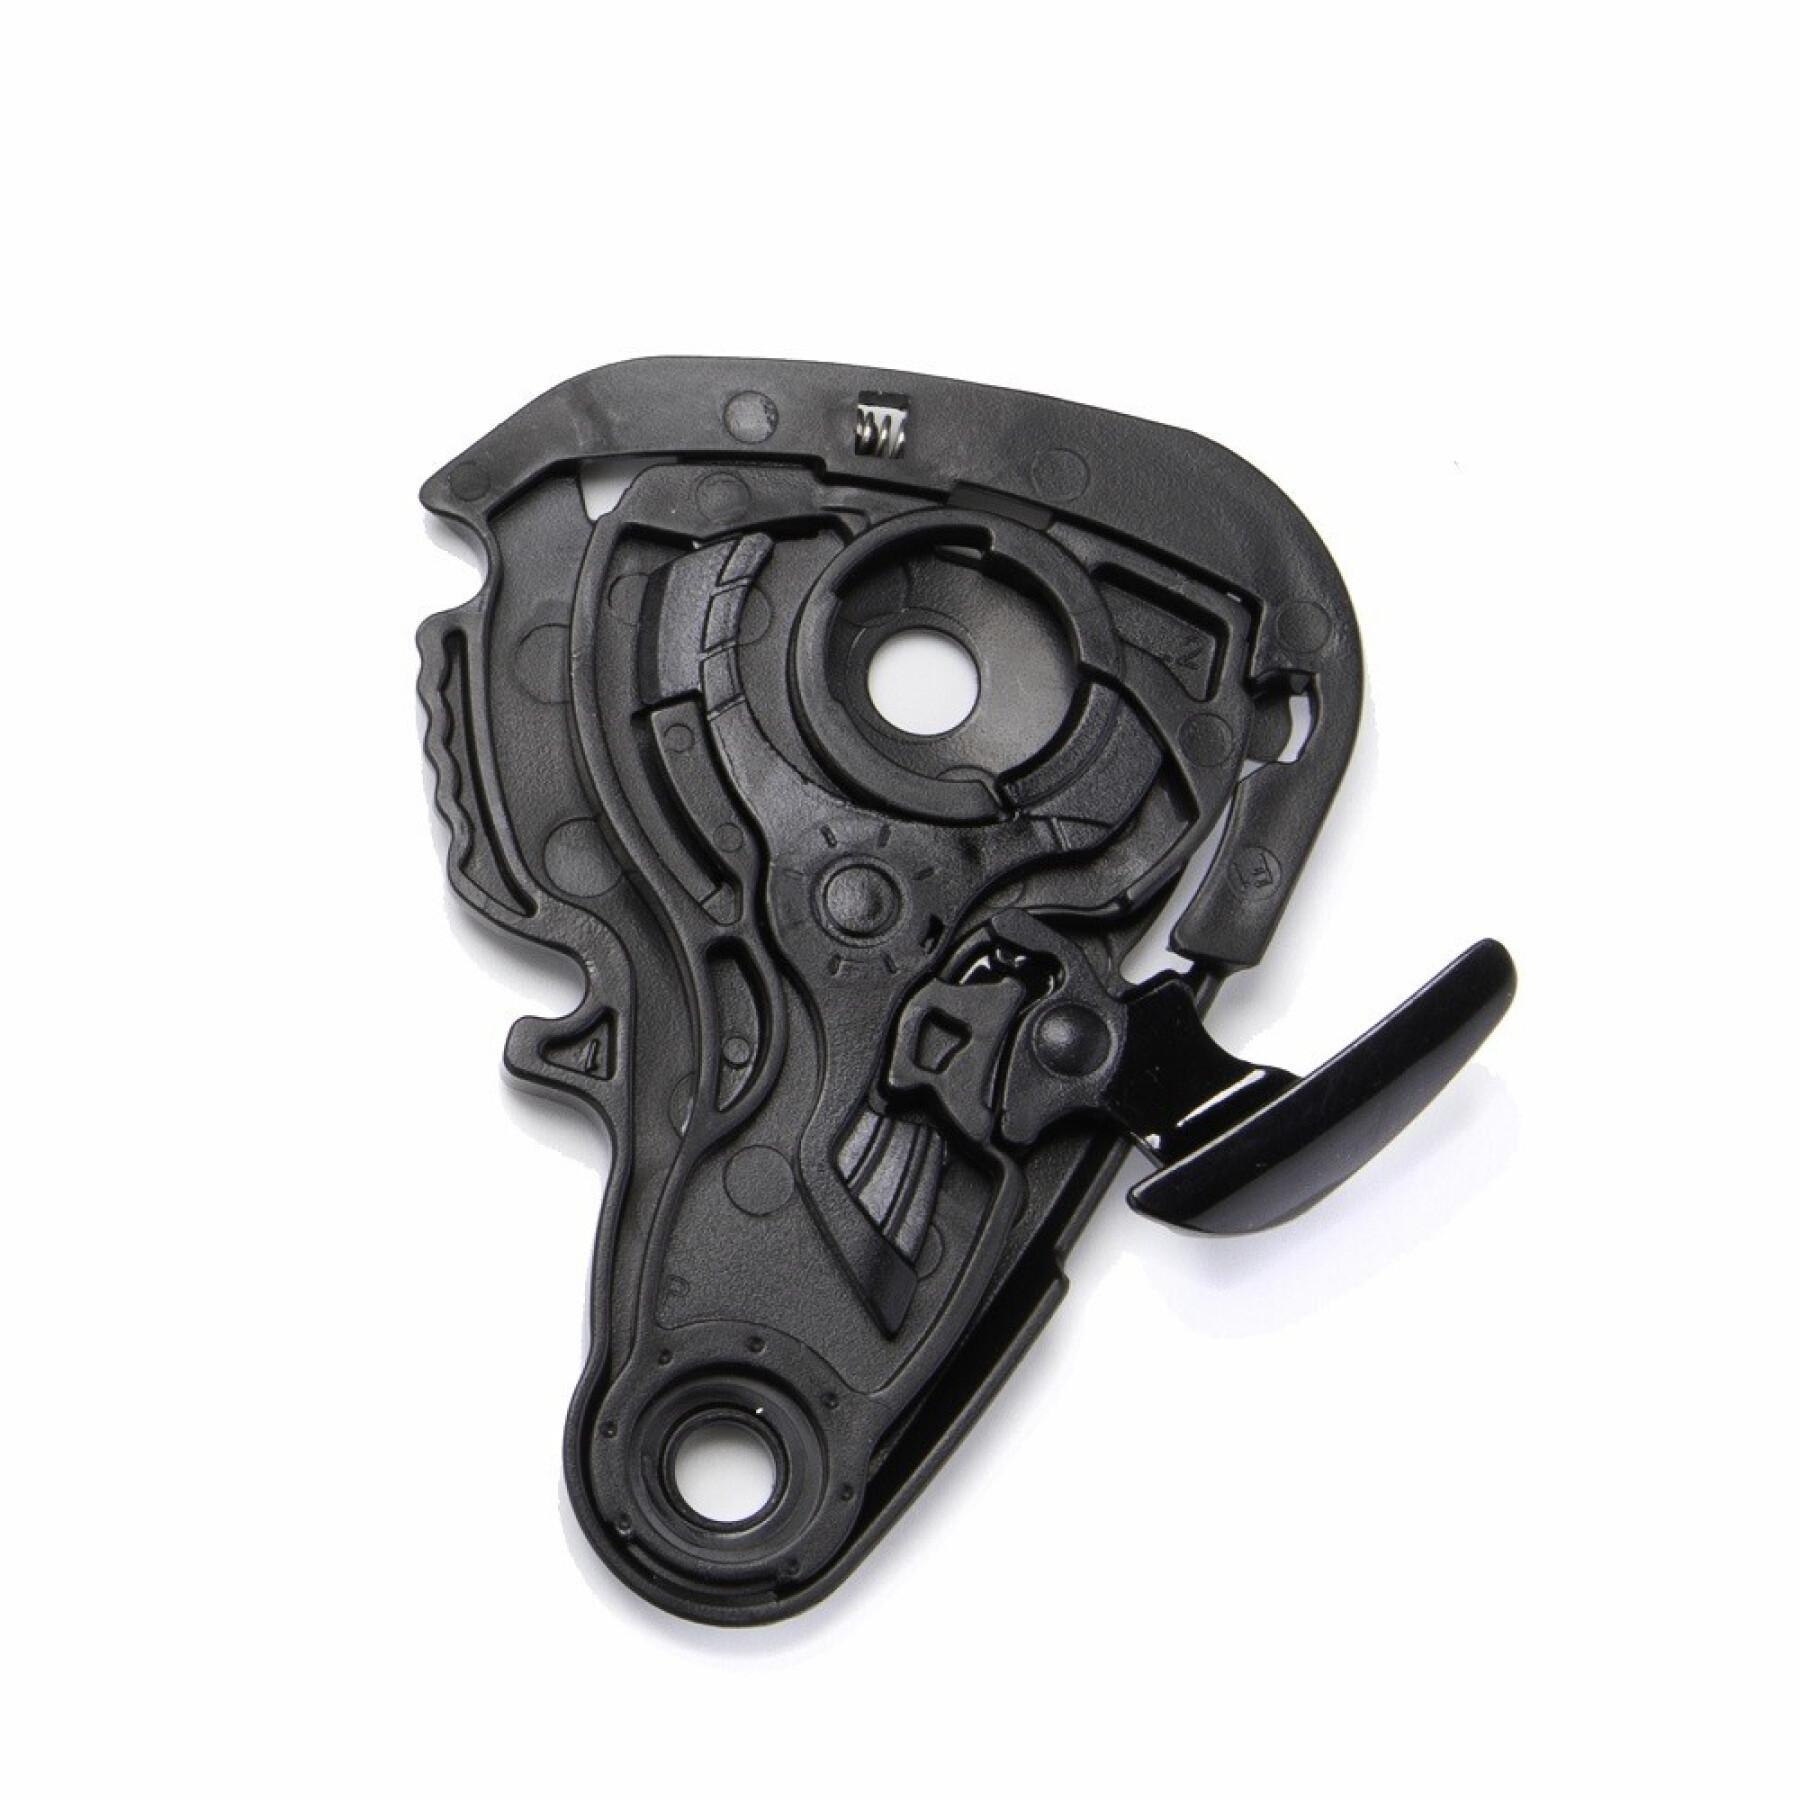 Kit fixation visière moto Scorpion Exo-220 Shield